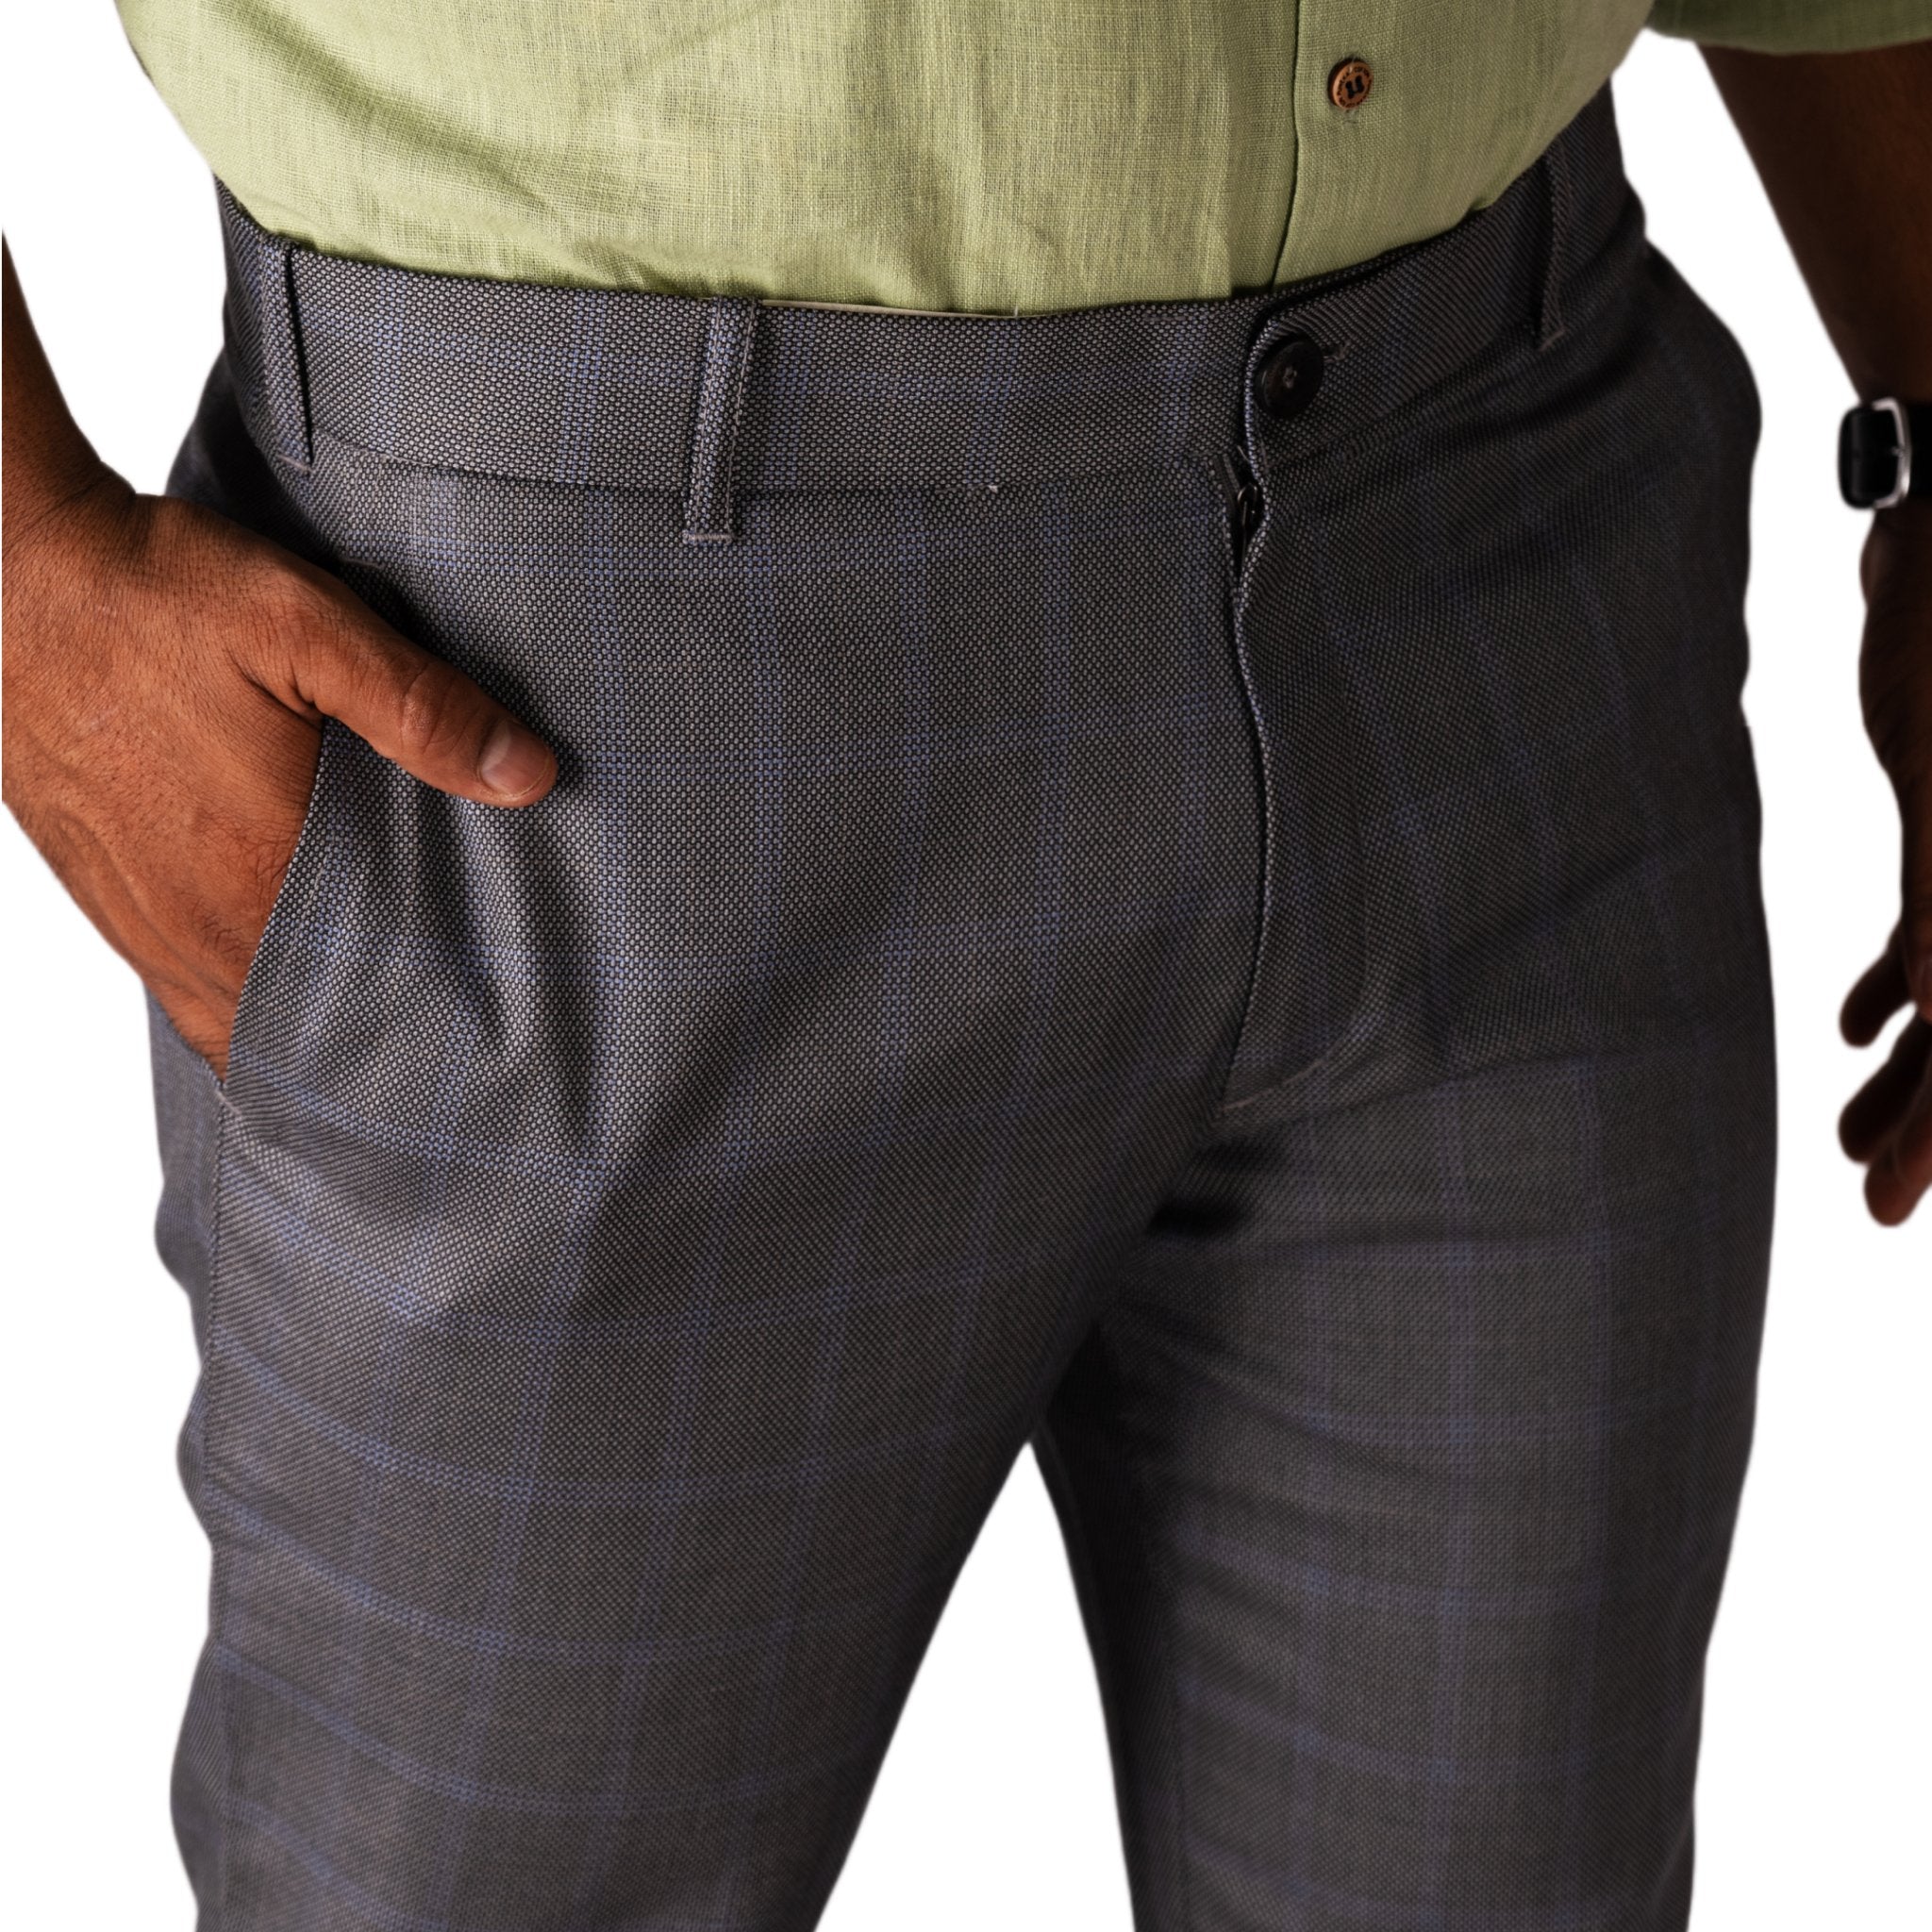 Dark Brown color check blend cotton trousers pant for men - Punekar Cotton